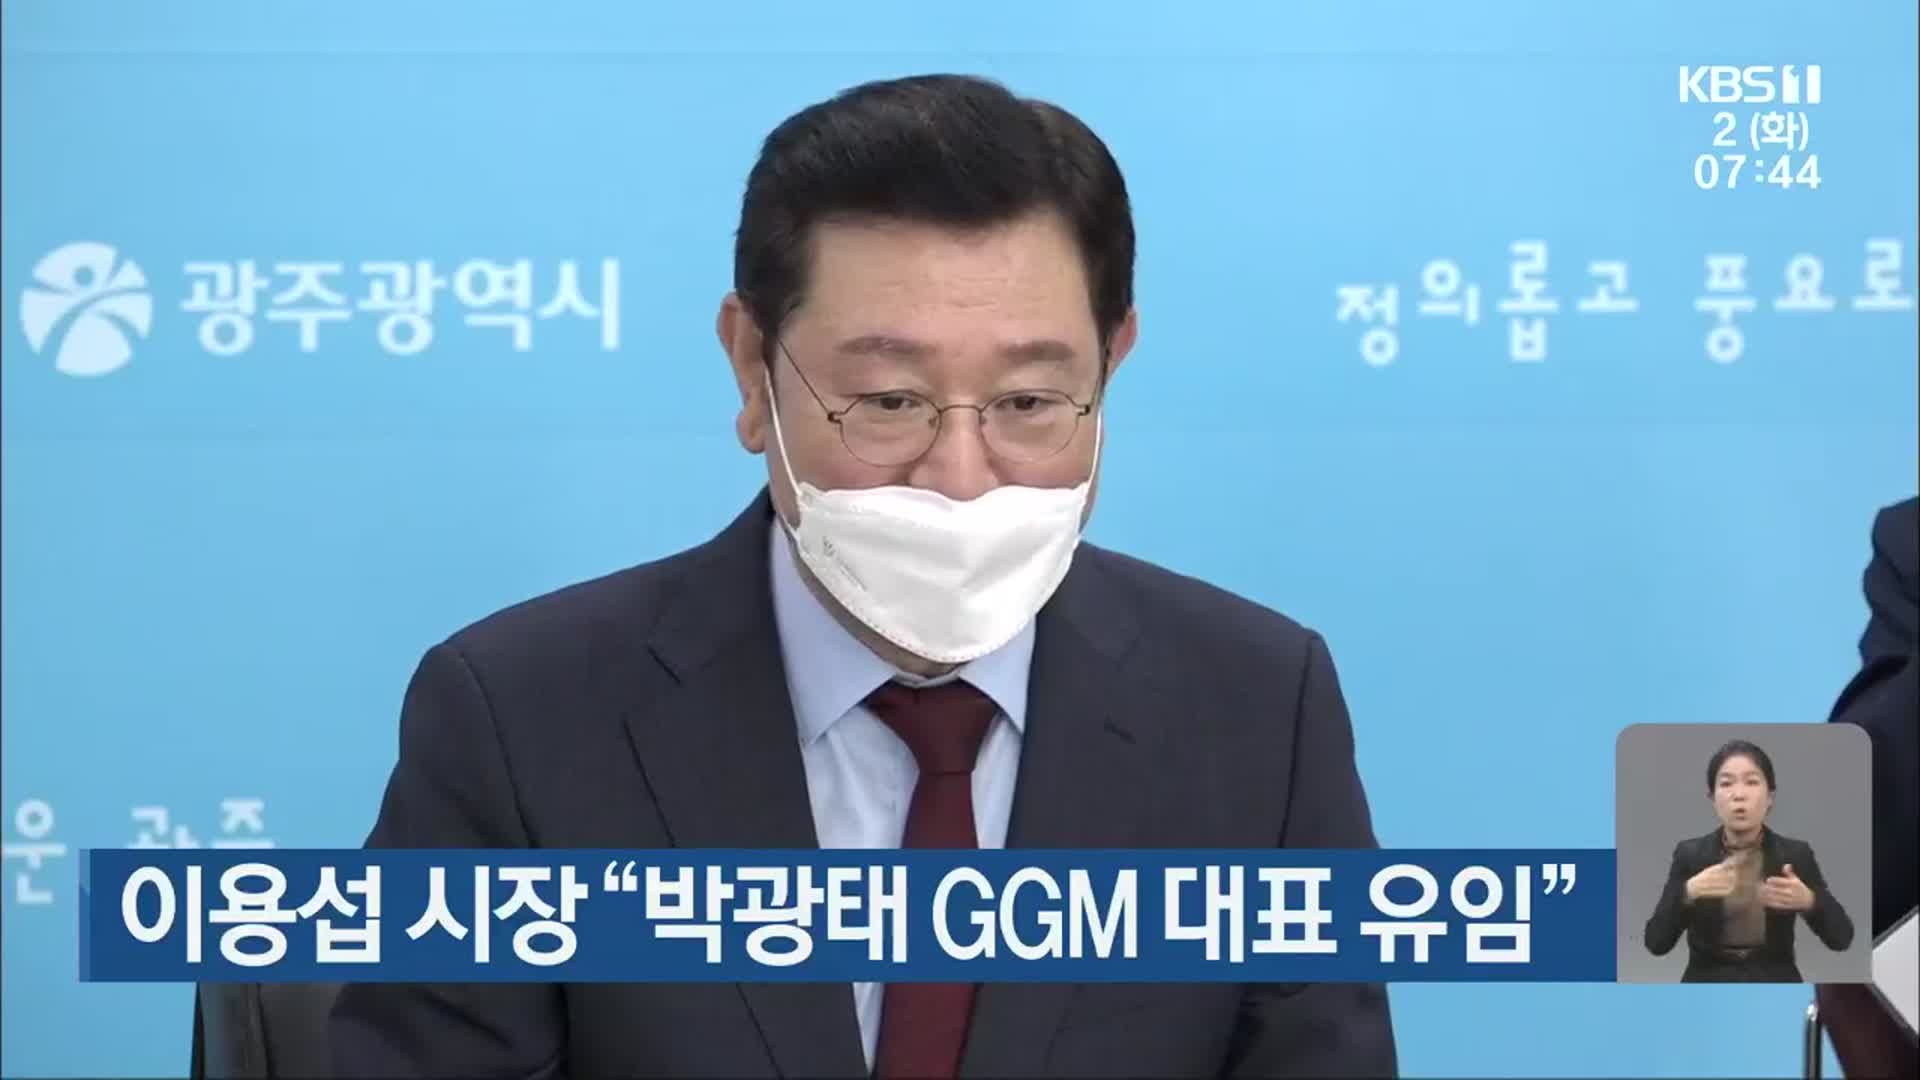 이용섭 시장 “박광태 GGM 대표 유임”